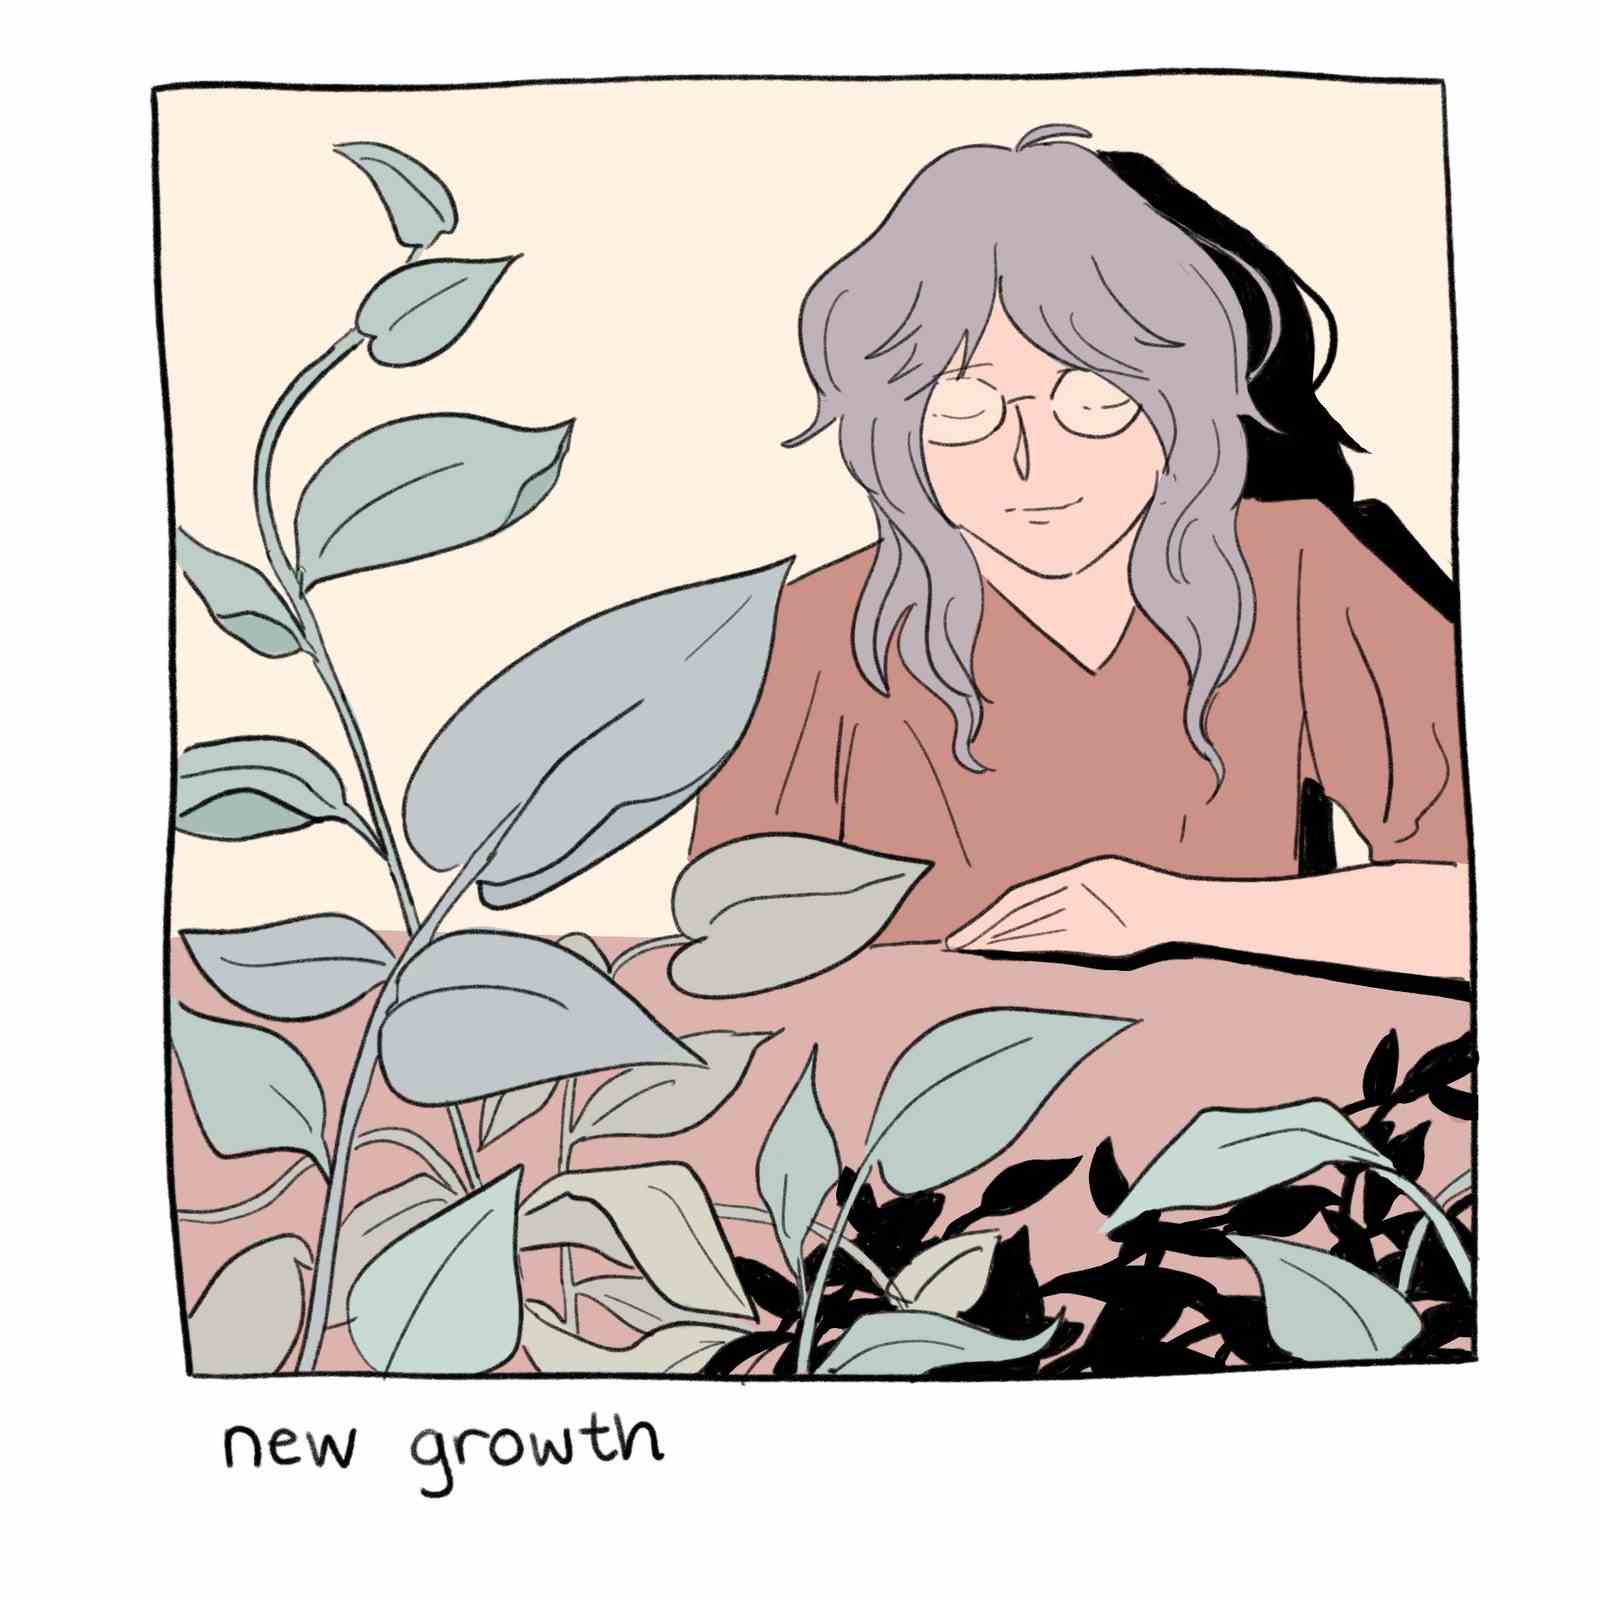 Frau zeigt neue Haare und Pflanzen.